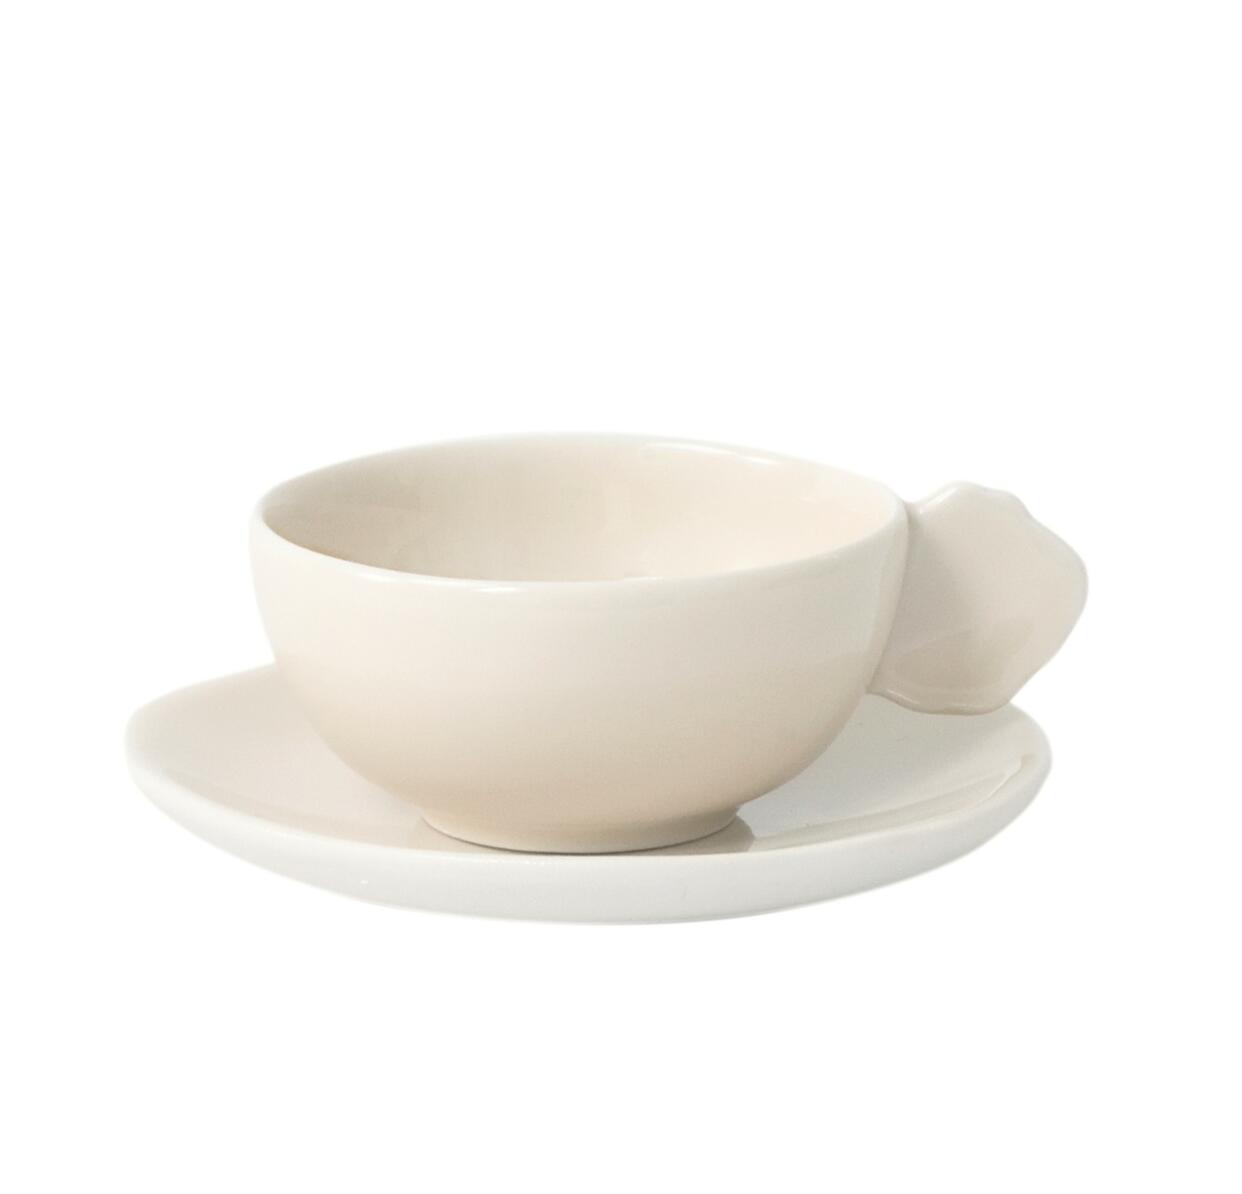 cup & saucer - m plume nude ceramic manufacturer